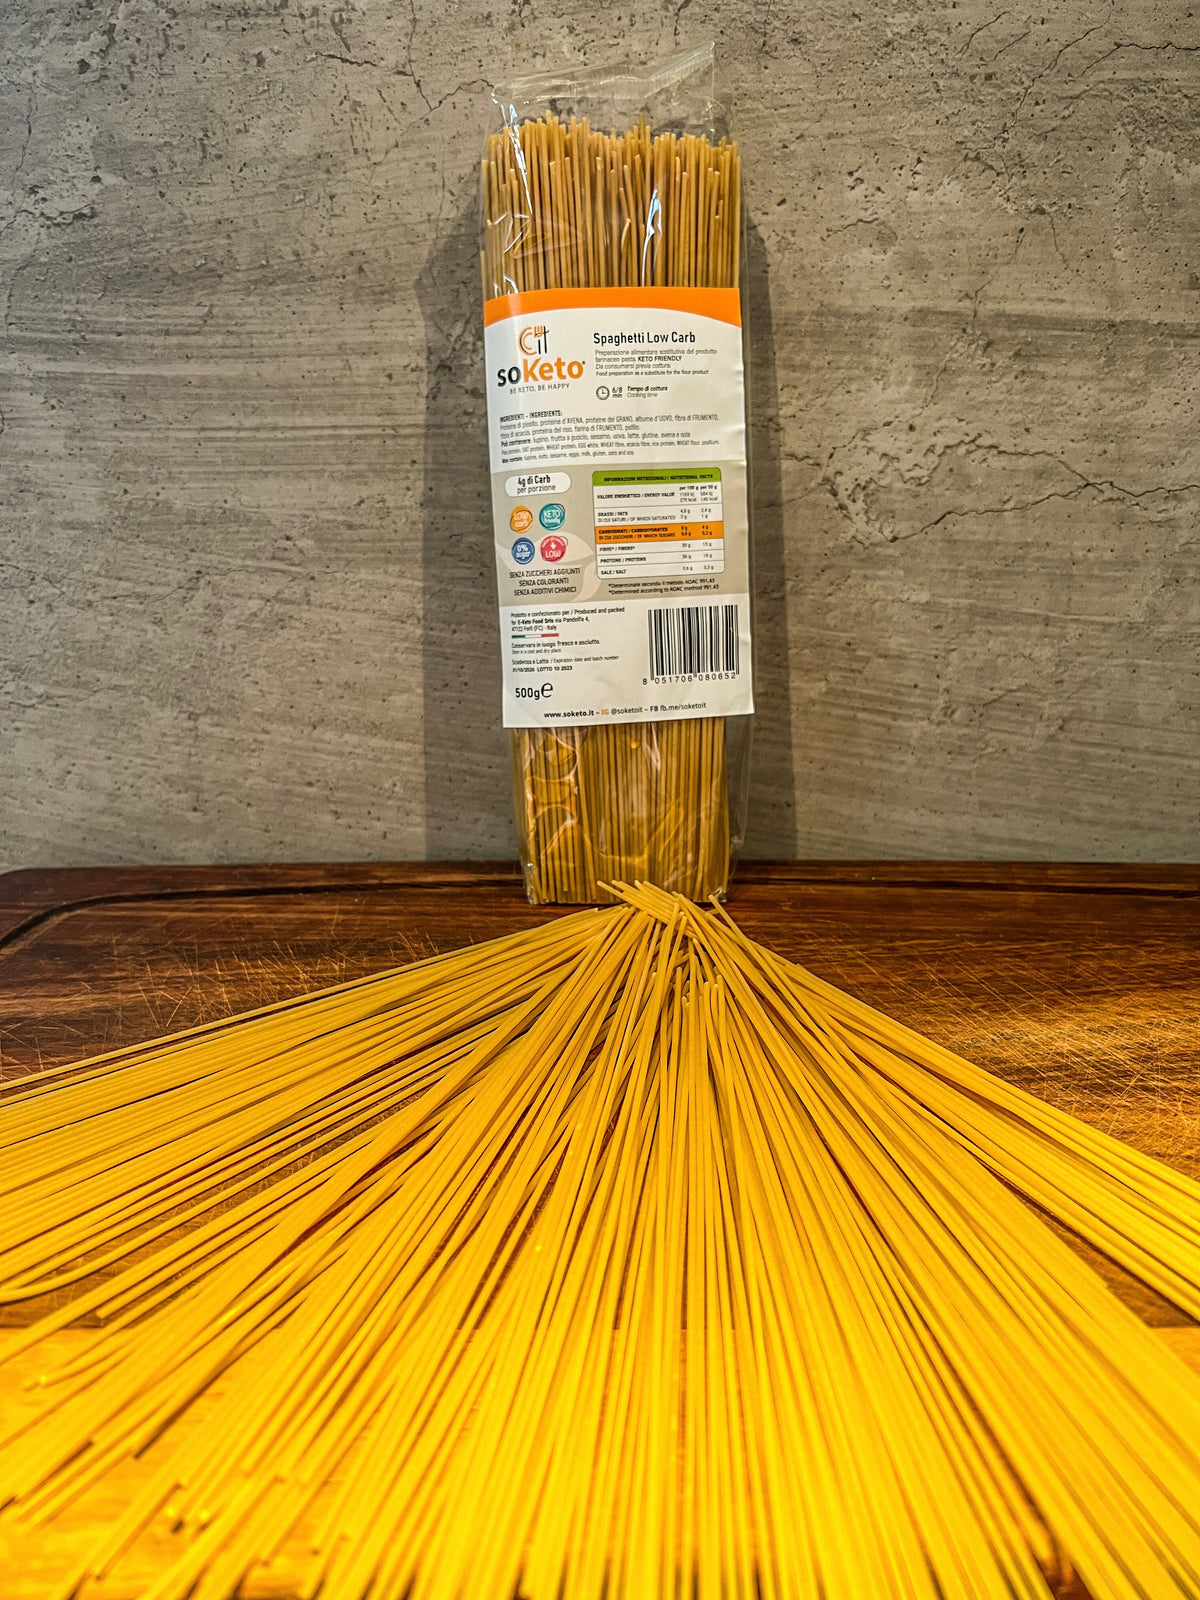 Spaghetti Keto à faible teneur en glucides (500g) 4gr de glucides